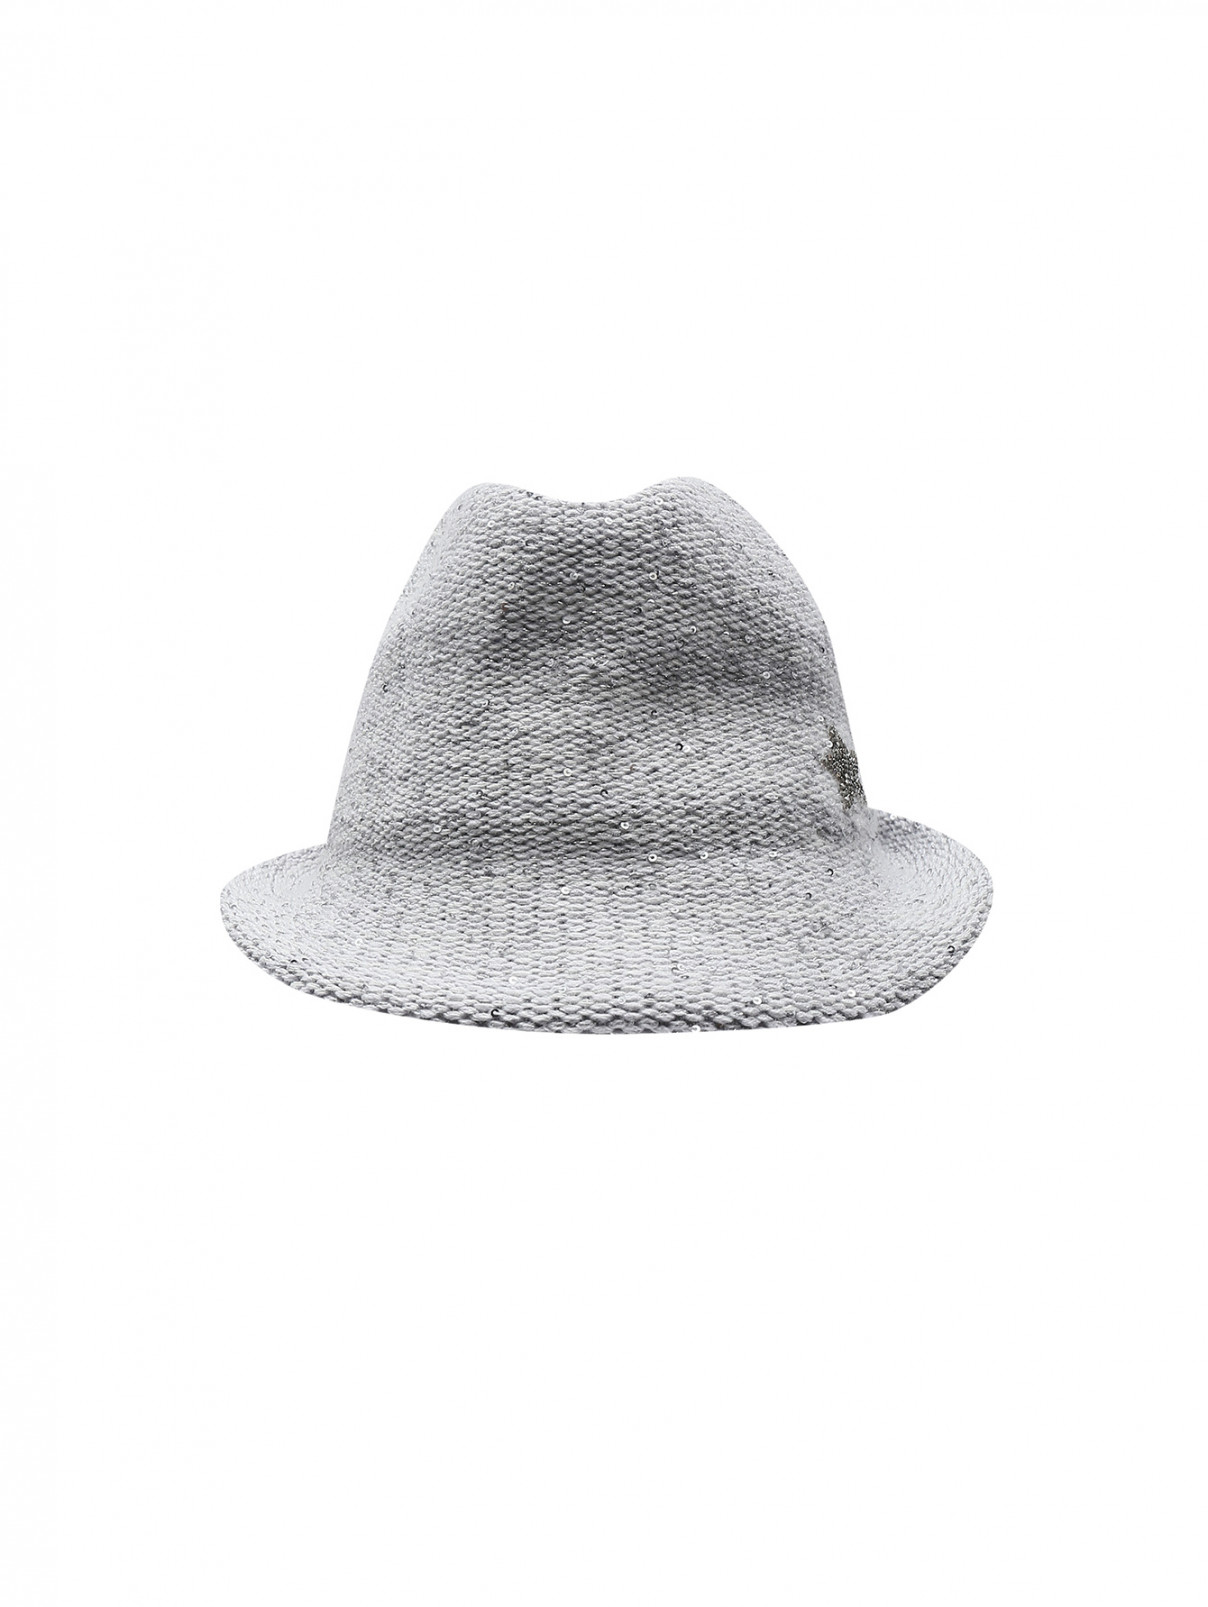 Трикотажная шляпа из смешанной шерсти, декорированная пайетками Lorena Antoniazzi  –  Общий вид  – Цвет:  Серый